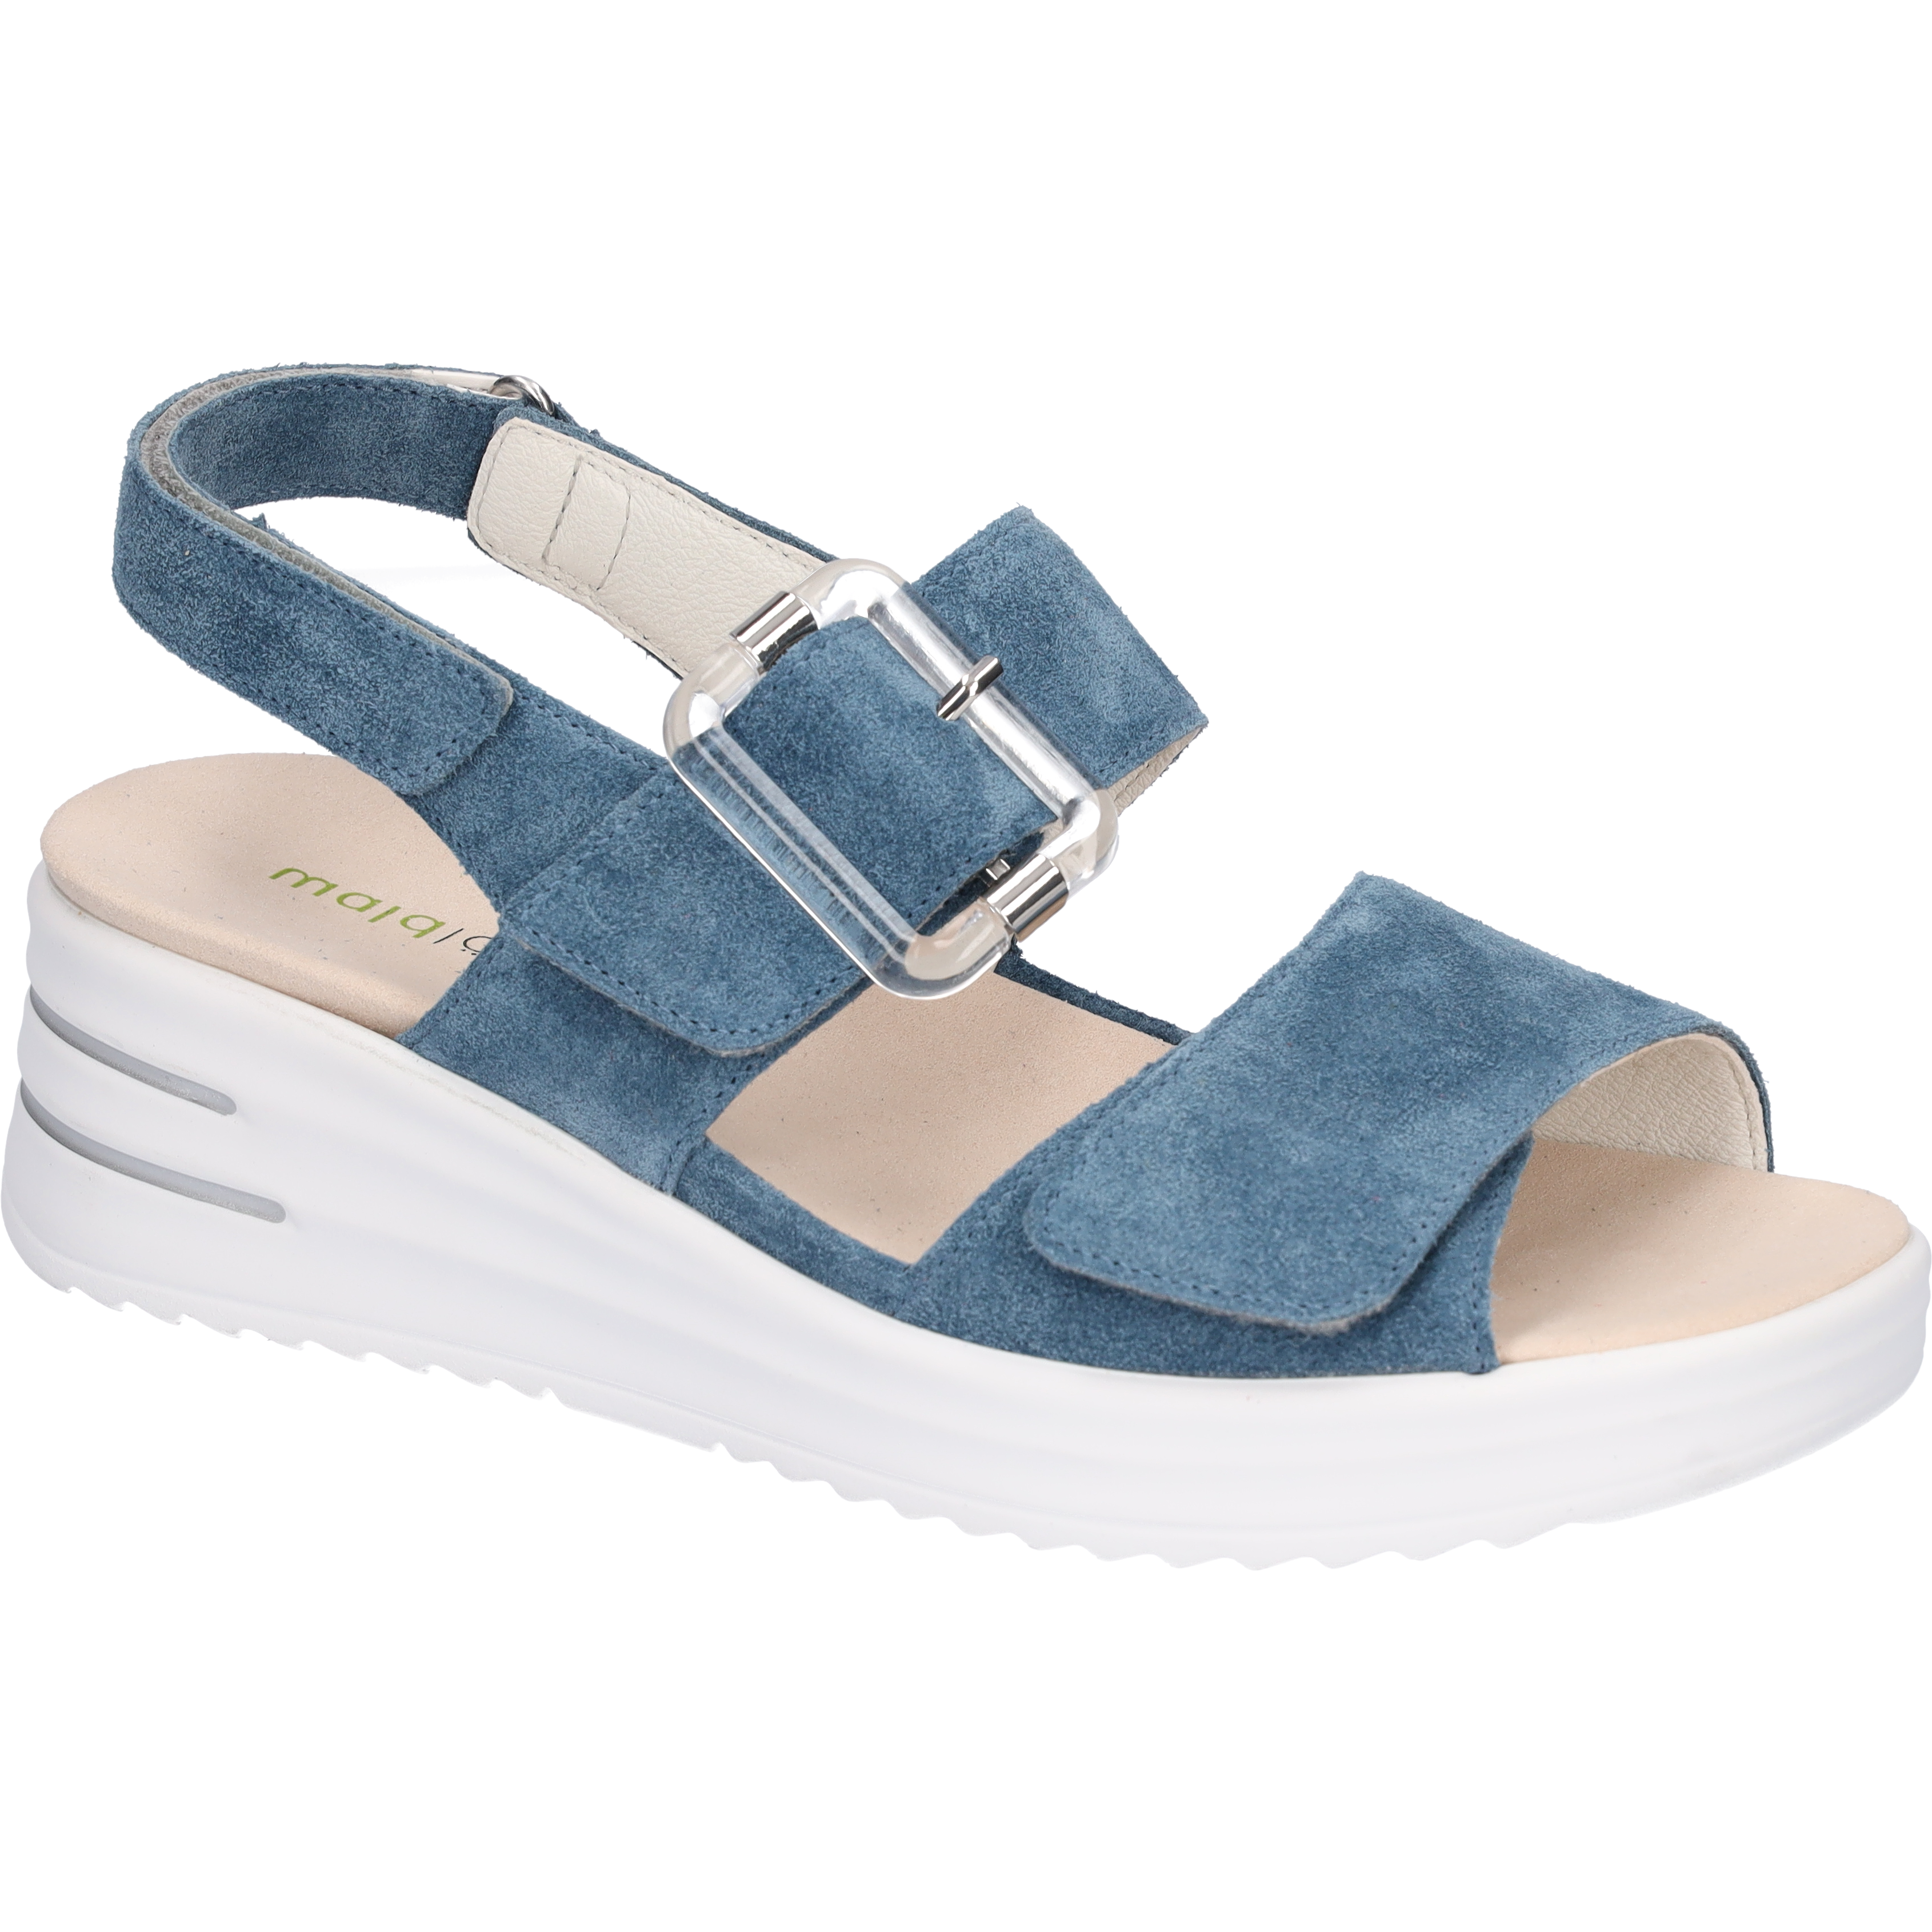 Waldlaufer H-Dina(795006)- Ladies Low Wedge Sandal in Jeans Nubuck. Waldlaufer Shoes | Wide Fit Shoes |  Wisemans | Bantry | West Cork | Ireland